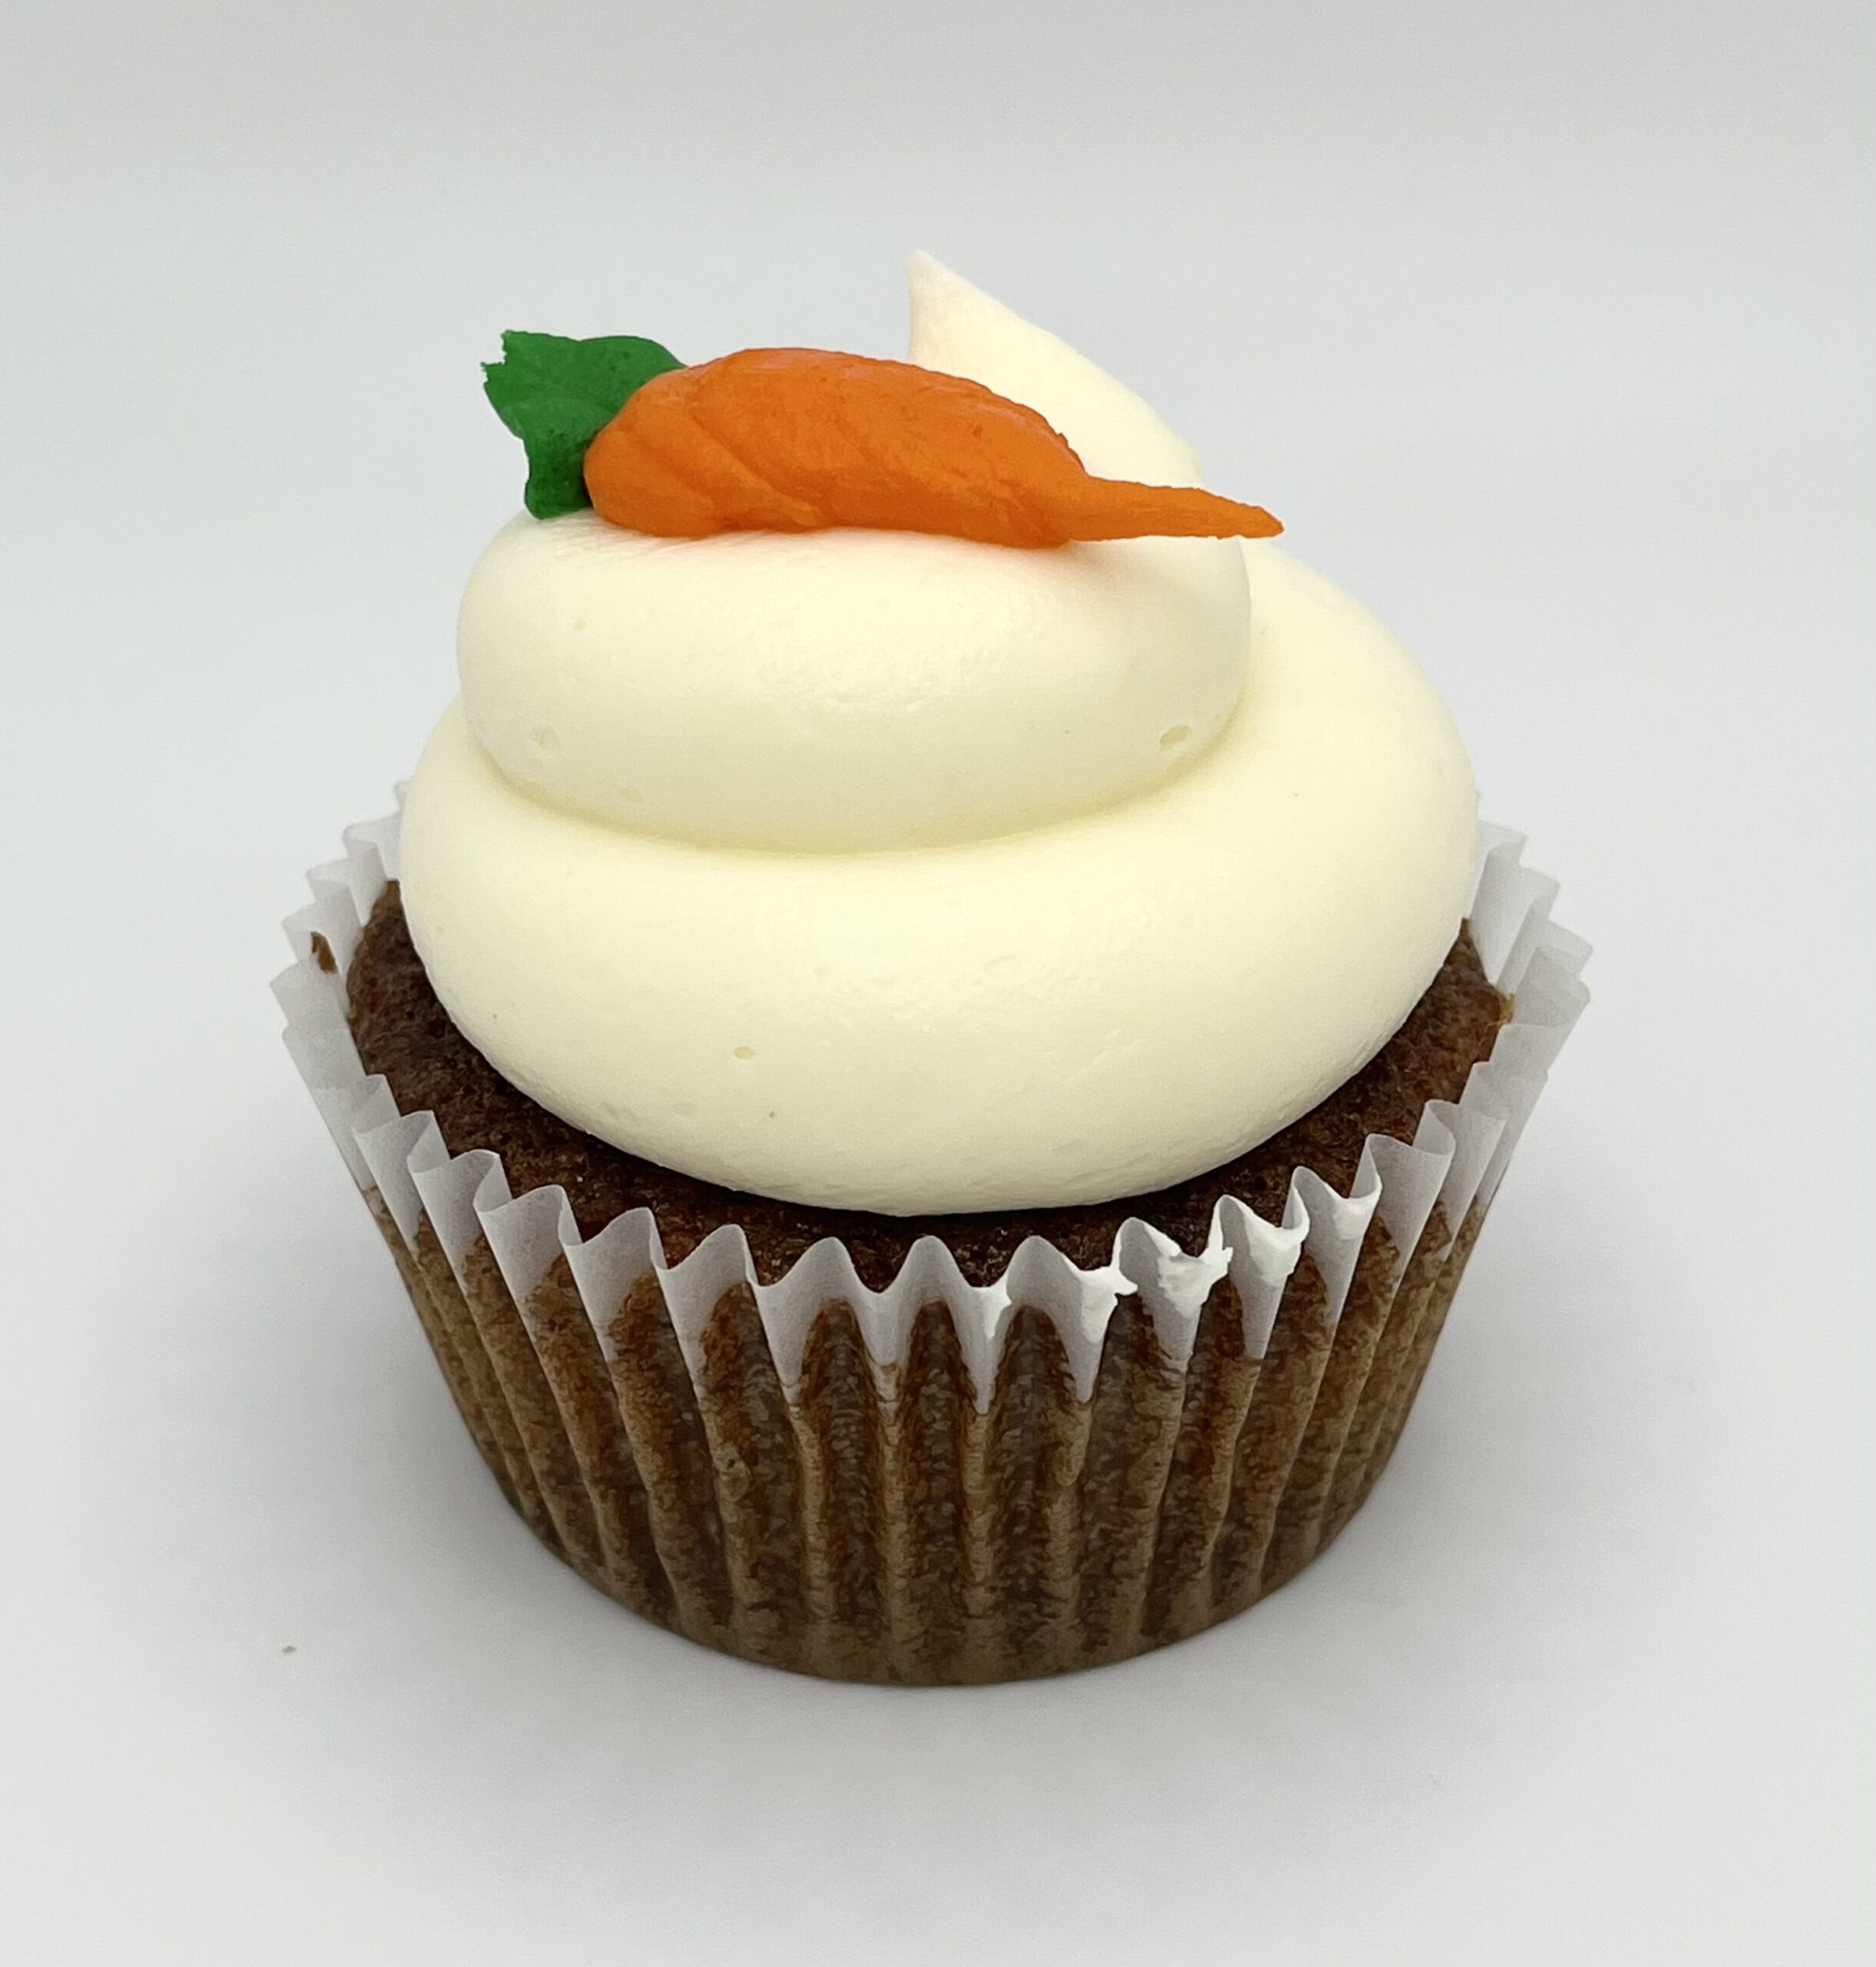 onderwijs lever diepte Carrot Cupcakes - The Cakeroom Bakery Shop